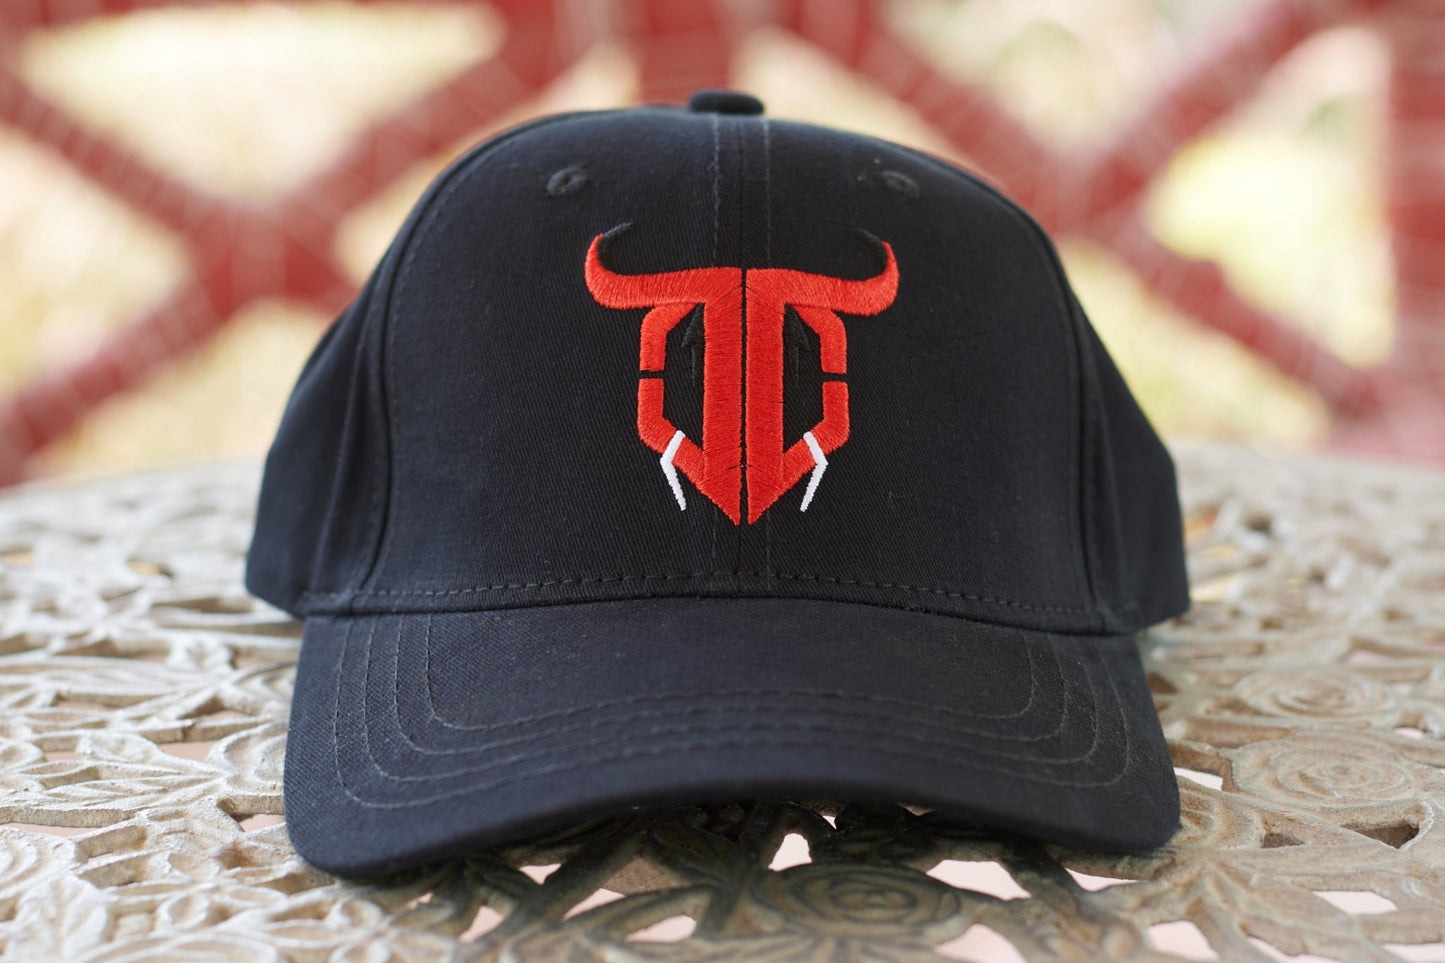 Go Devil Logo Printed Black Cap - Go Devil